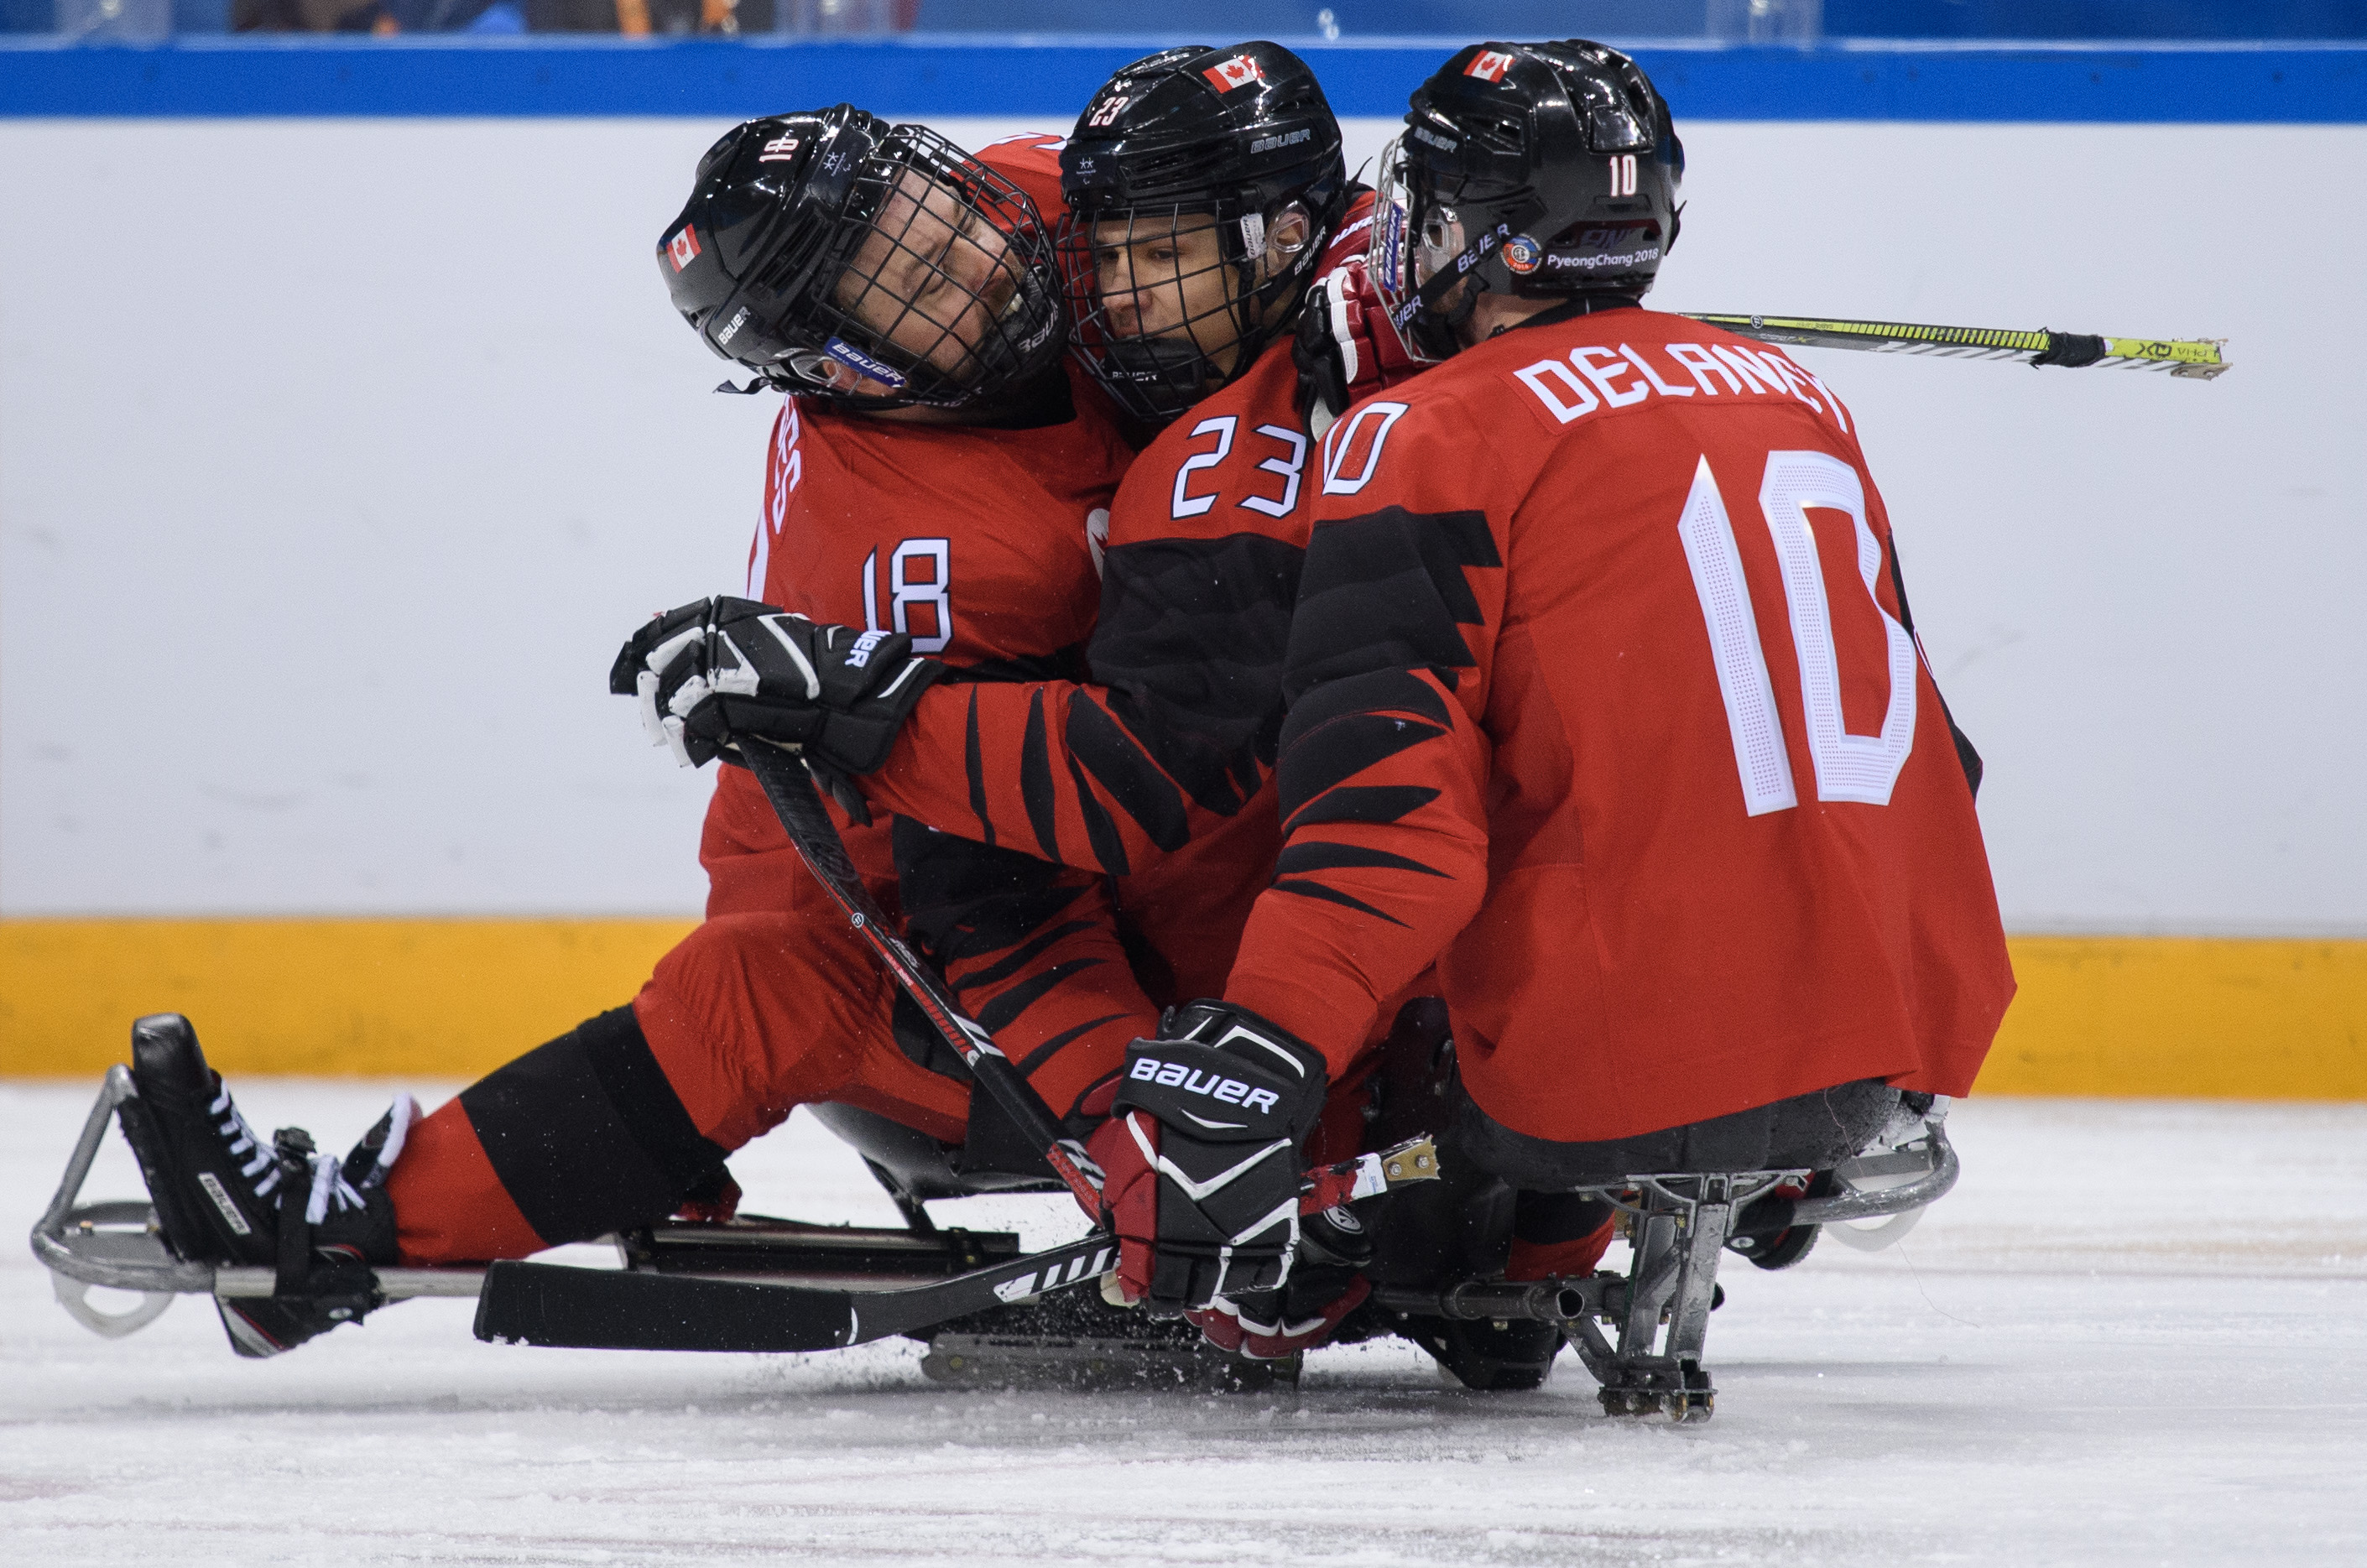 Three Para ice hockey players celebrating a goal